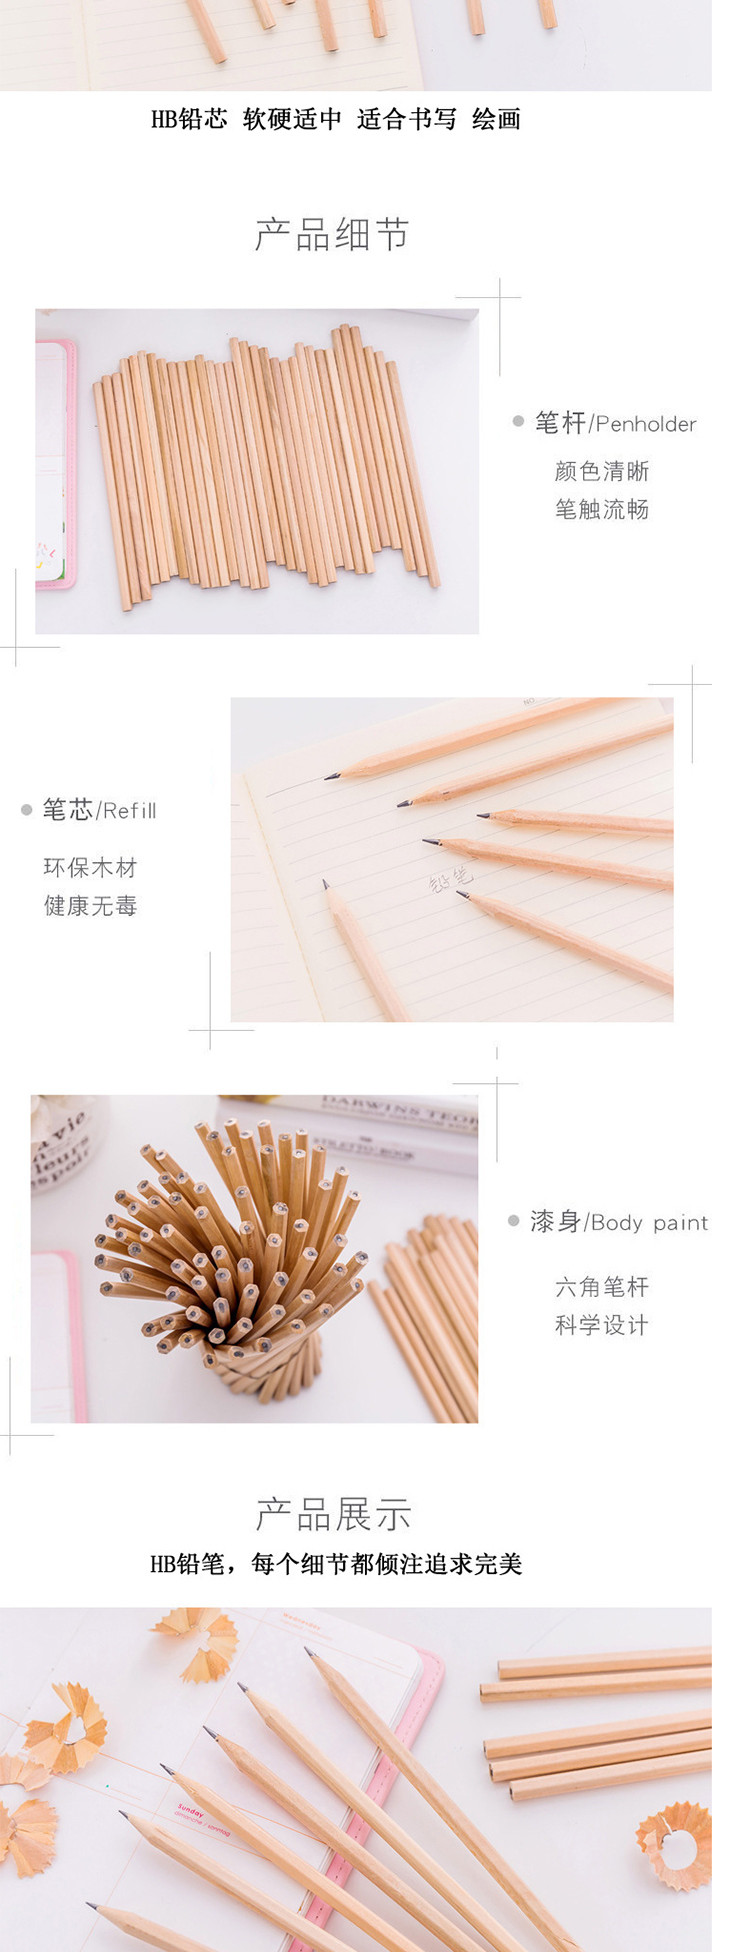   【开学必备】【50支/20支】HB原木铅笔写不断儿童铅笔小学生学习 办公素描笔